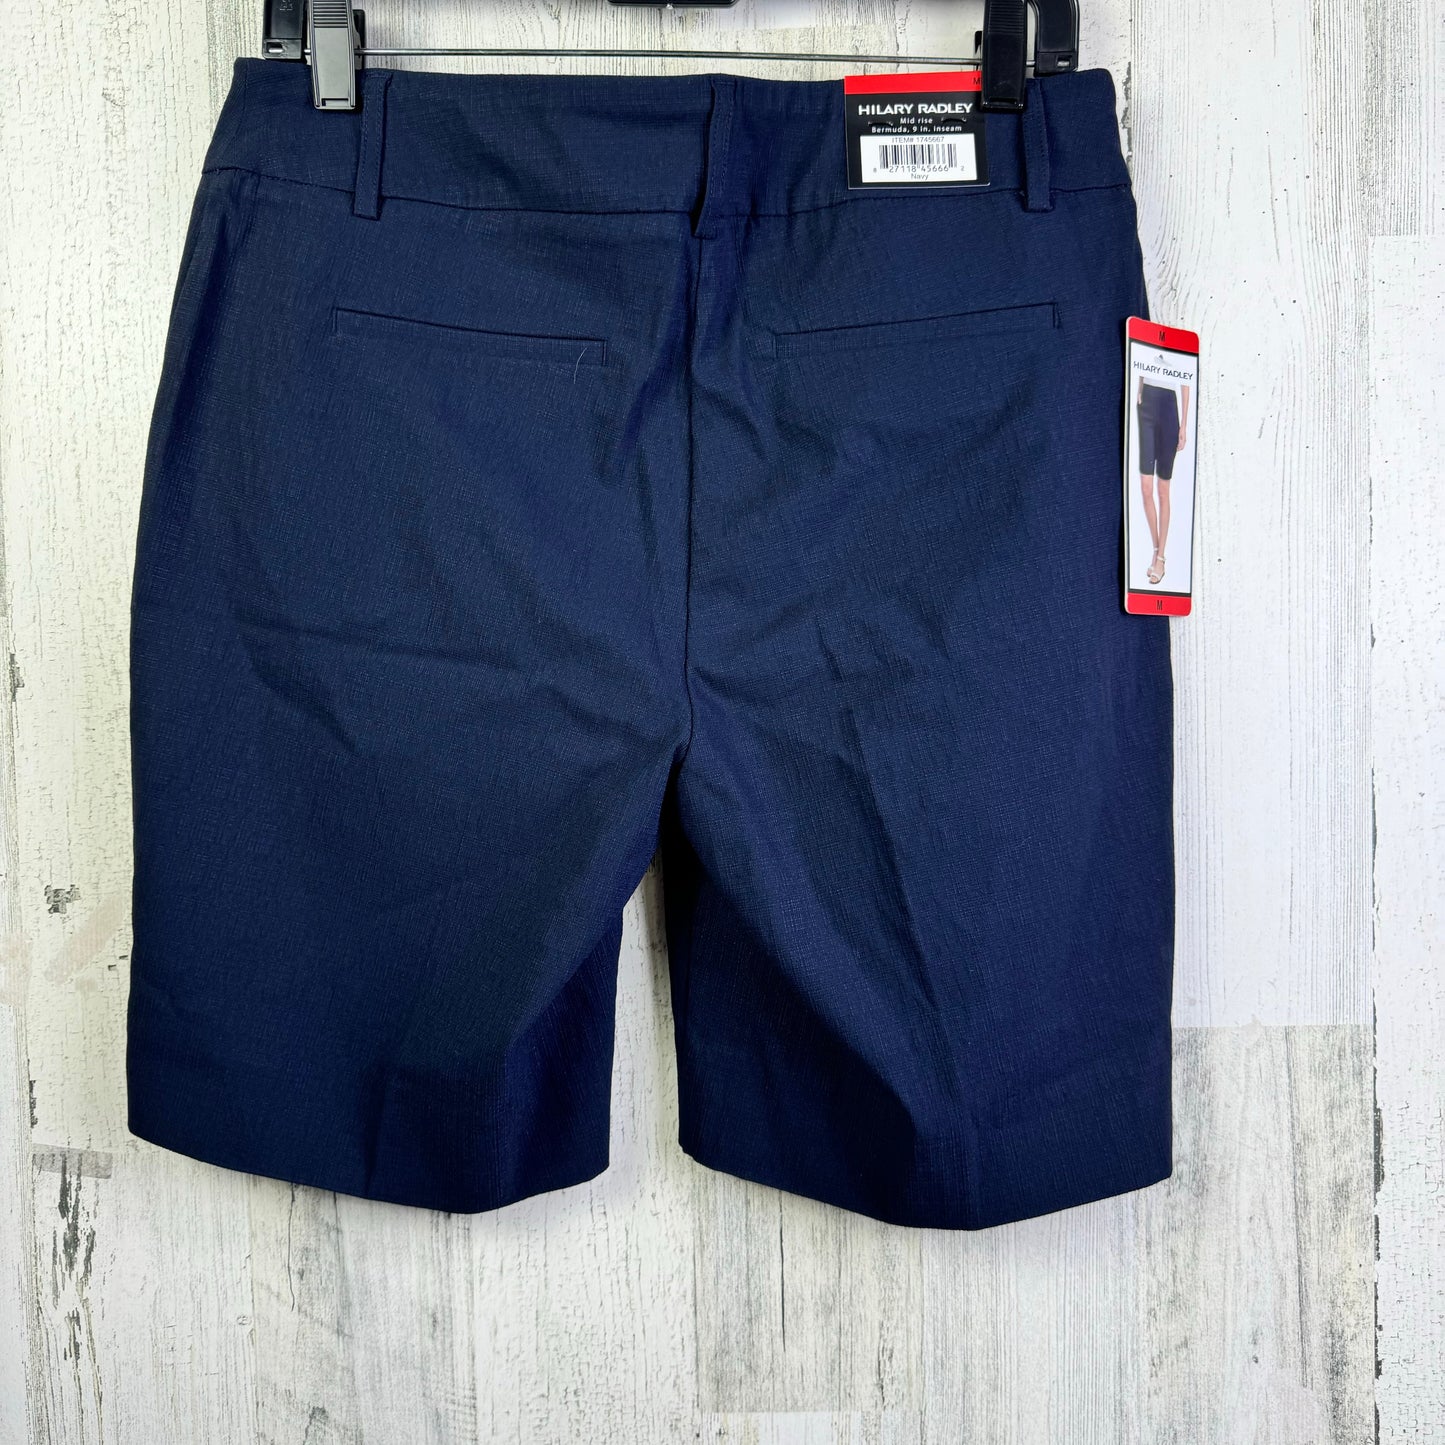 Navy Shorts Hilary Radley, Size 10